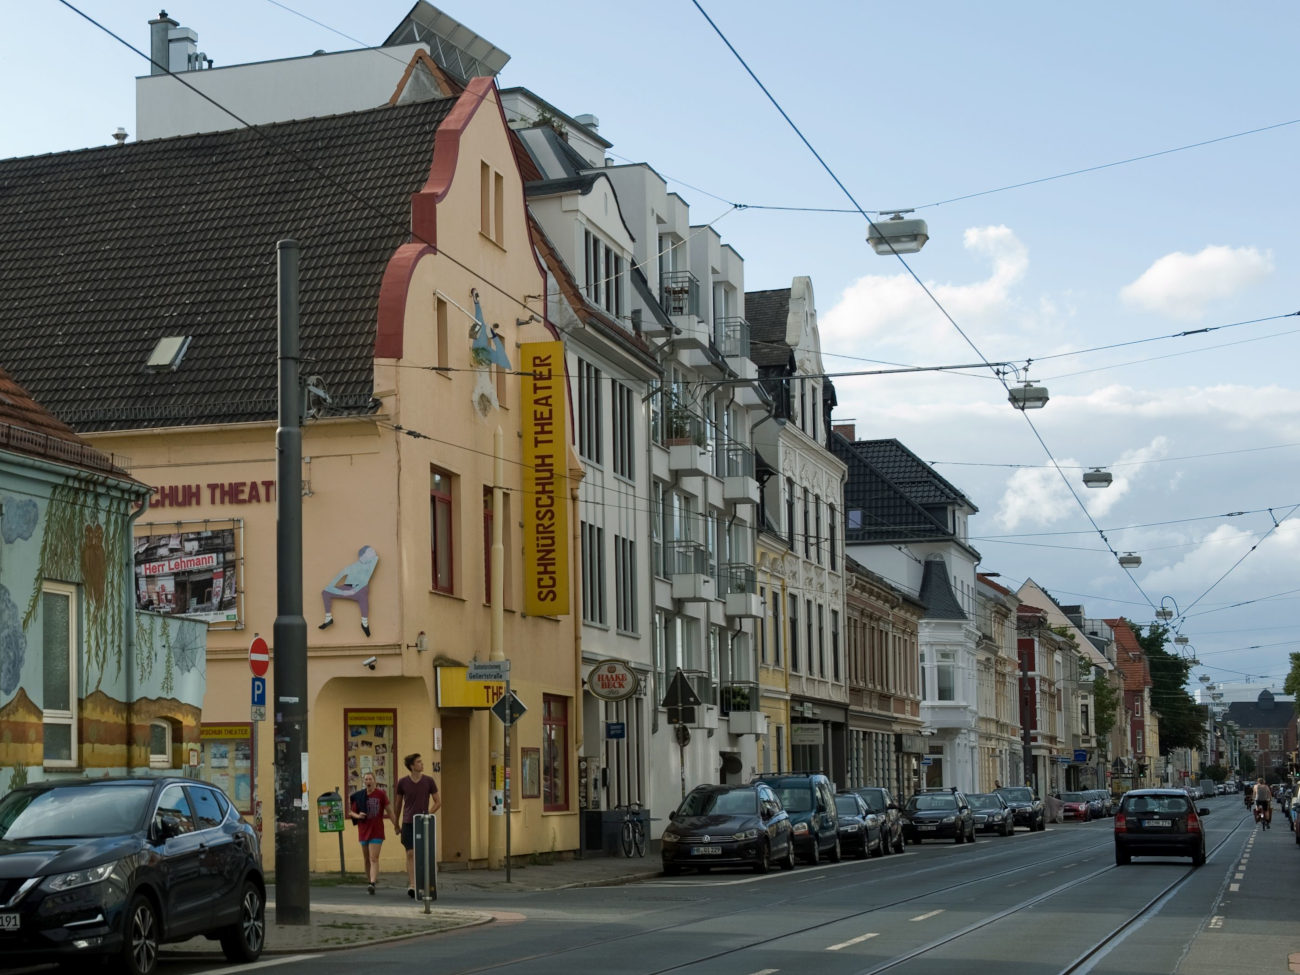 Häuserreihe in der Bremer Neustadt mit dem Schnürschuh Theater